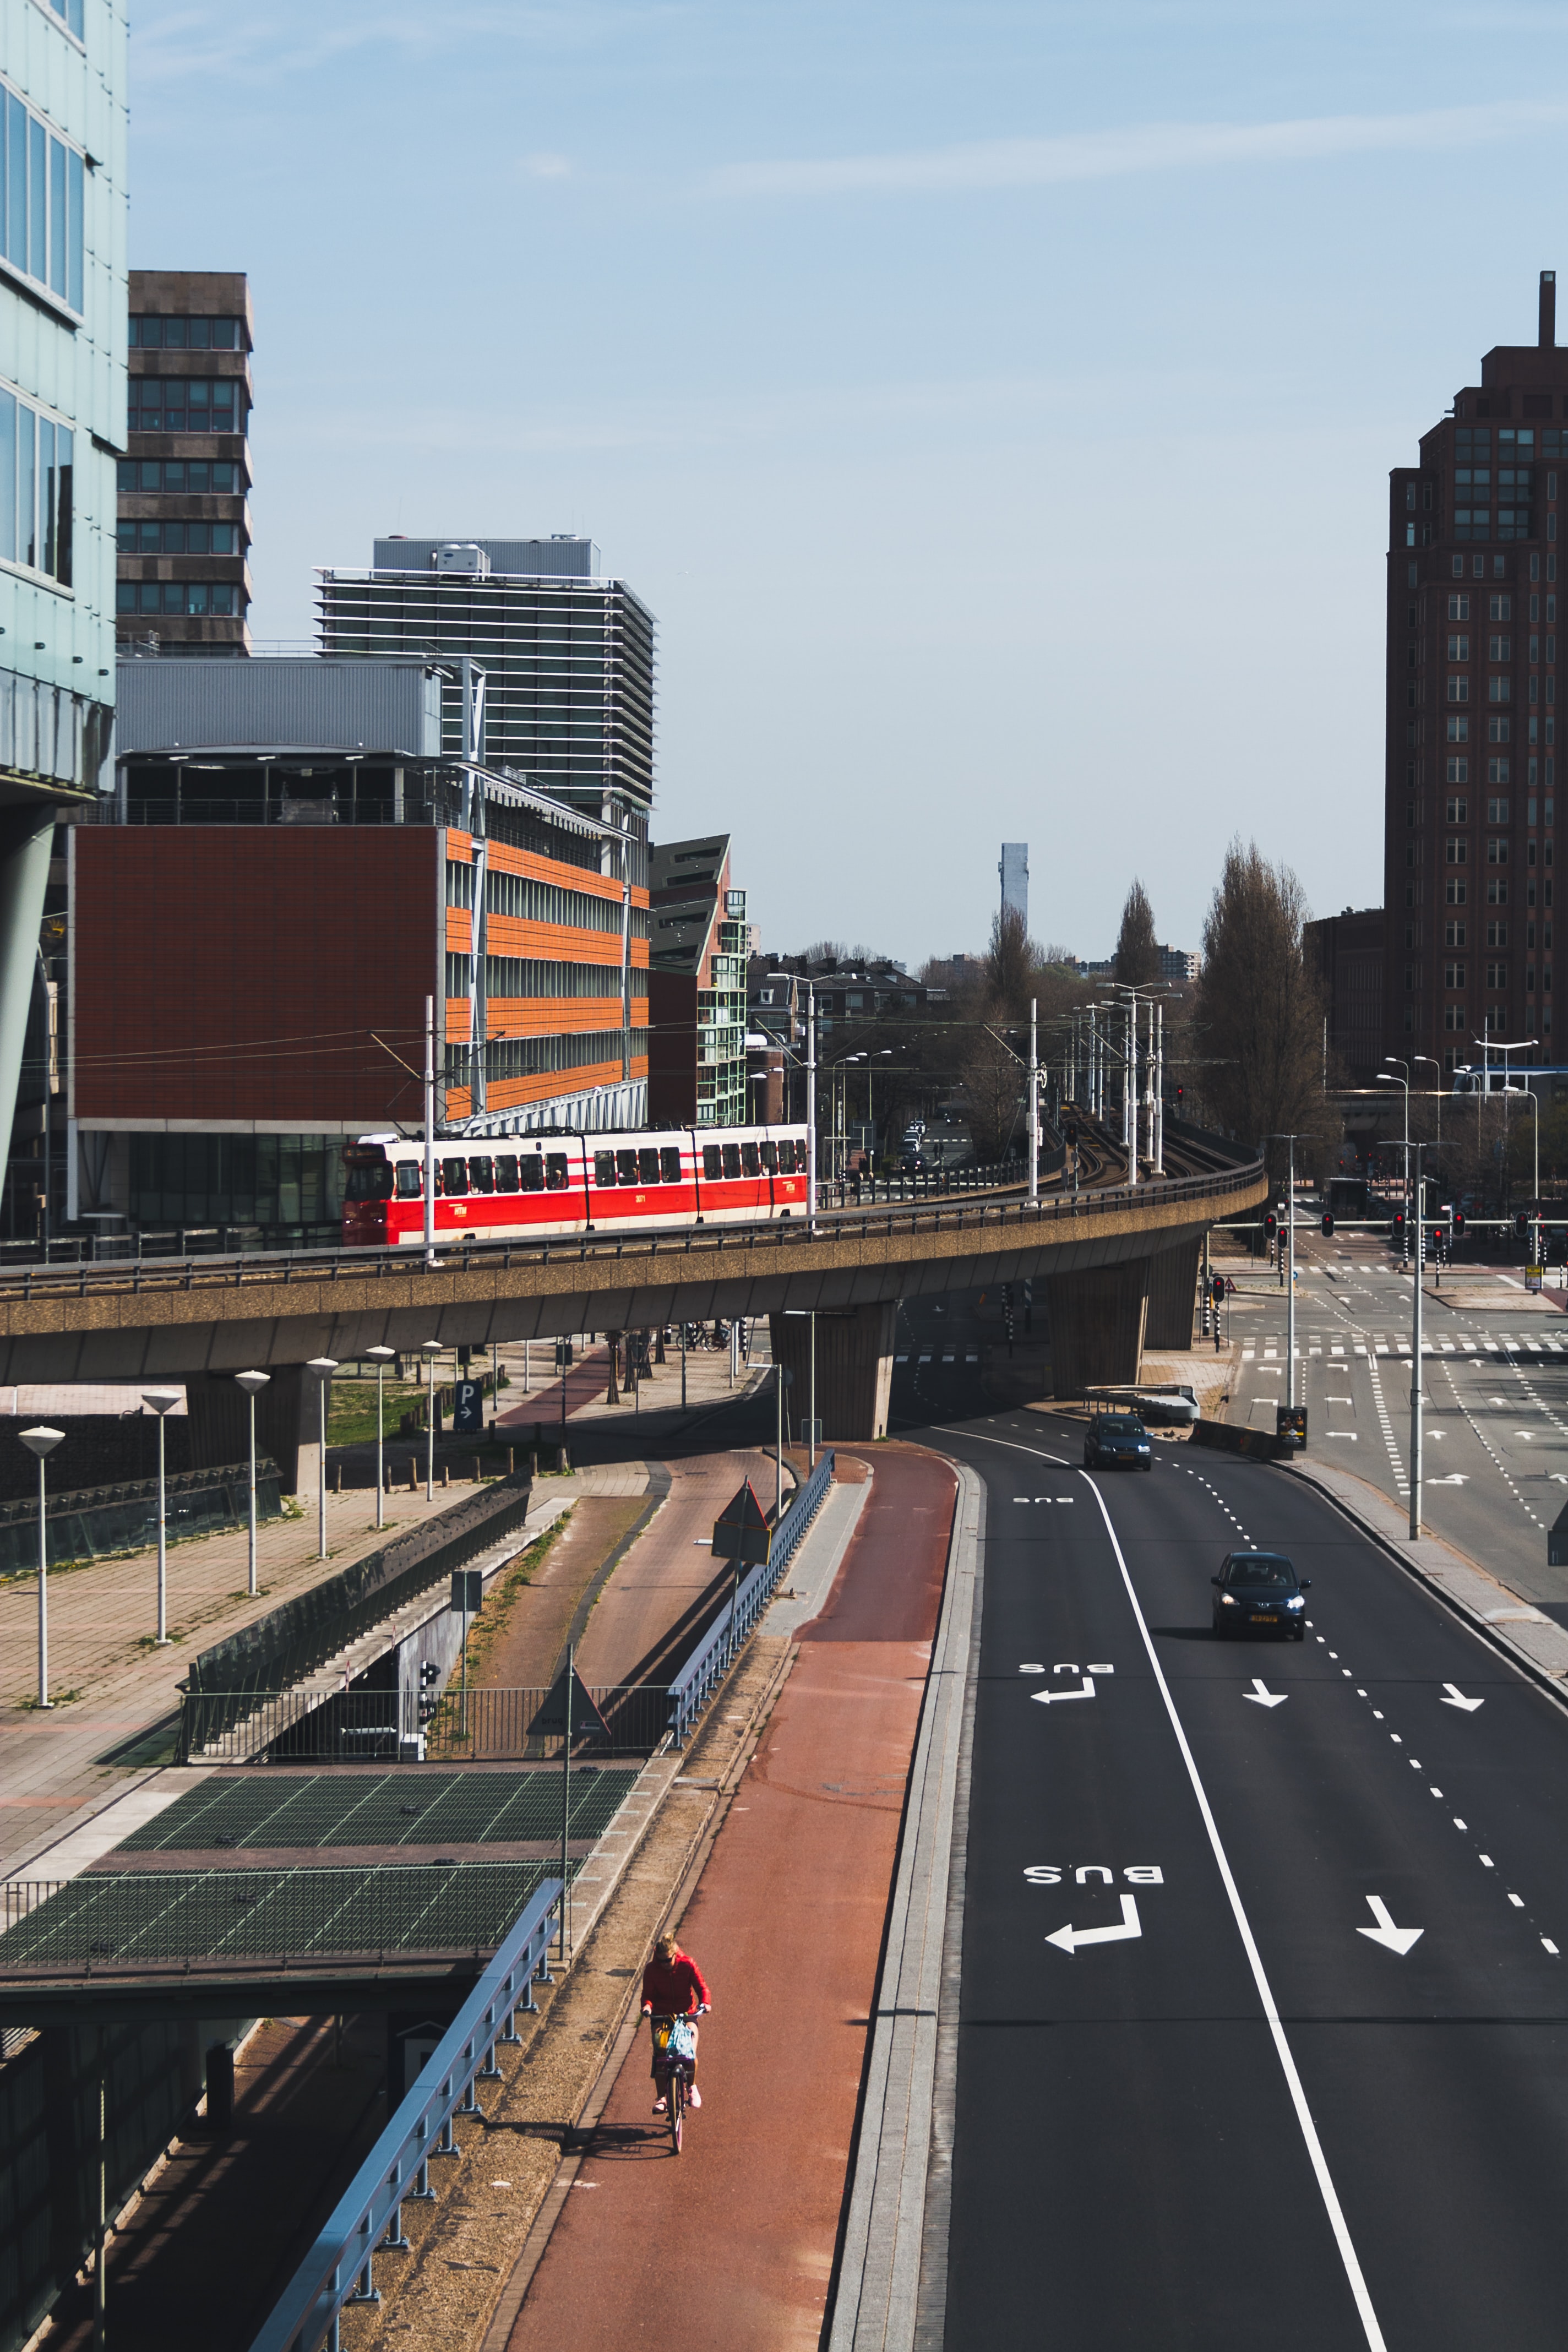 Den Haag, bike lane, curb, car a tramline and even a bus lane